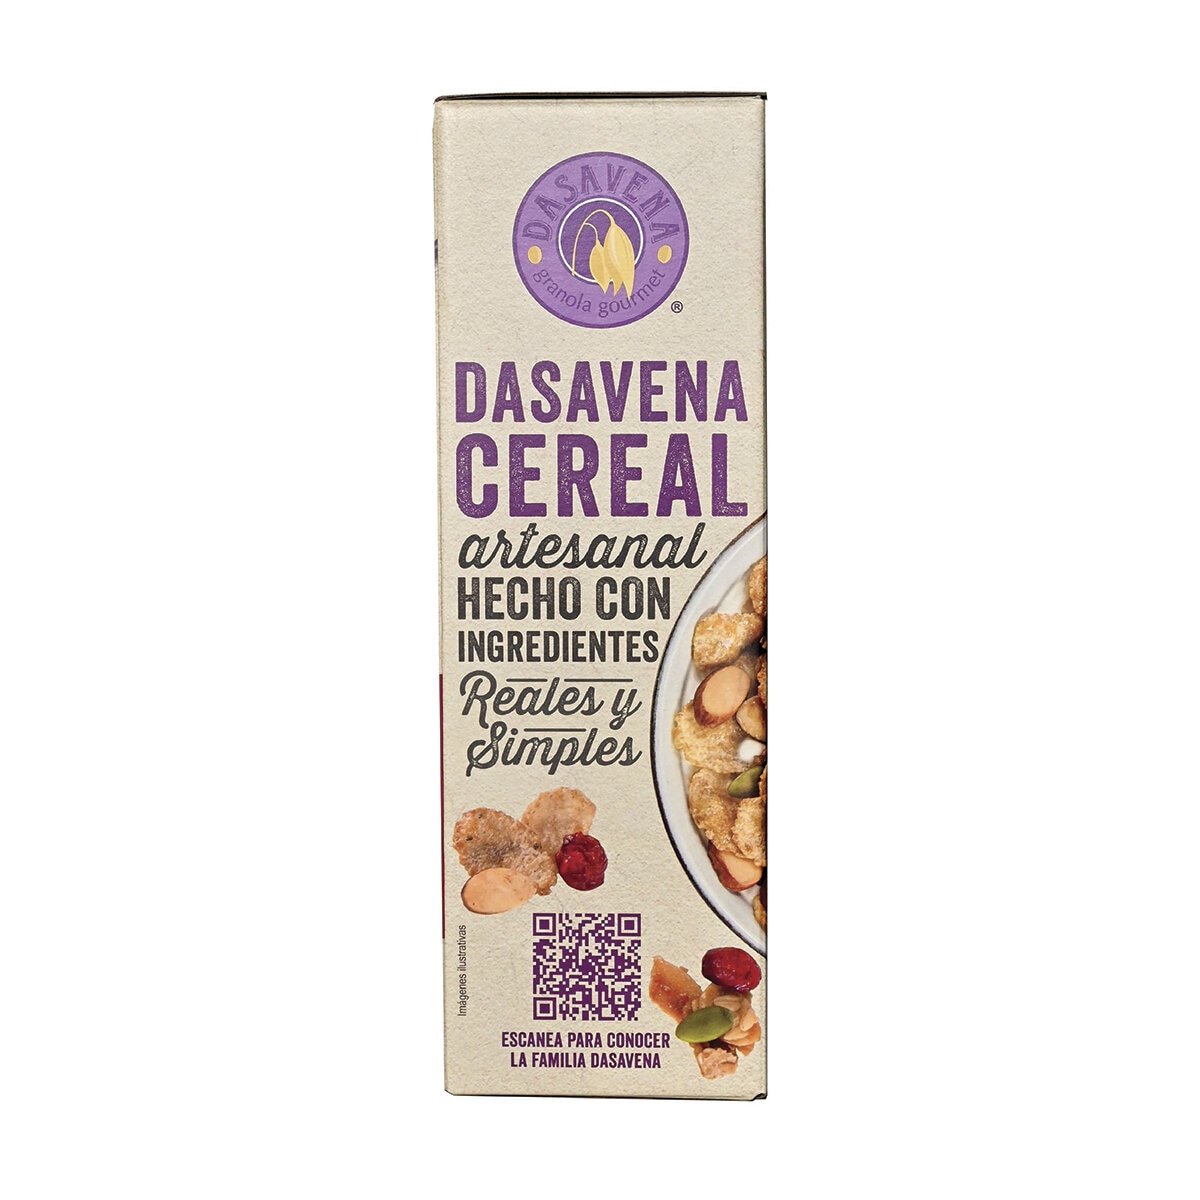 Dasavena Cereal Artesanal Arándanos & Almendras 1 kg